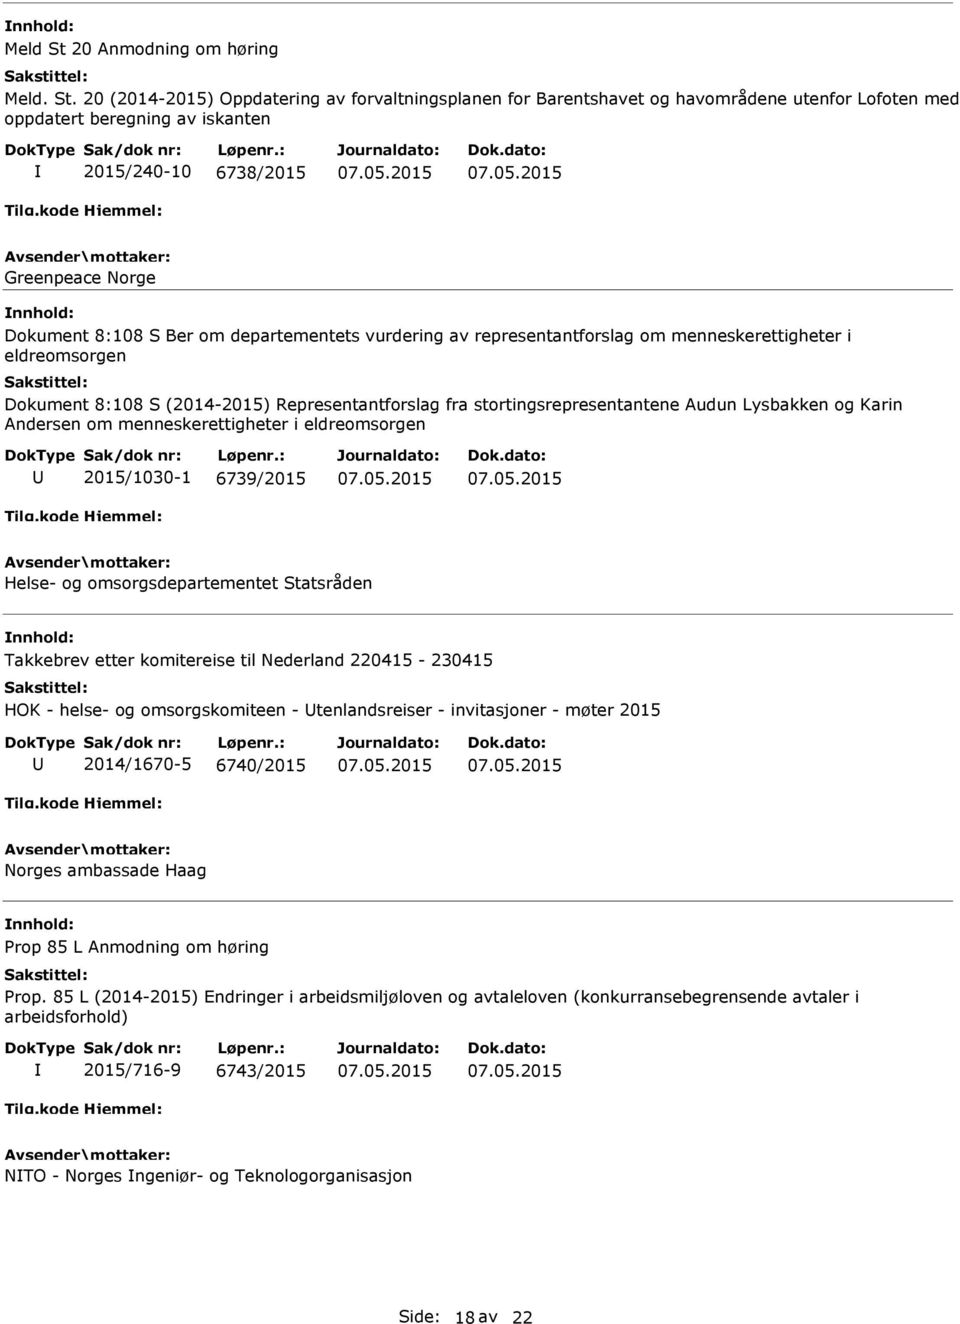 20 (2014-2015) Oppdatering av forvaltningsplanen for Barentshavet og havområdene utenfor Lofoten med oppdatert beregning av iskanten 2015/240-10 6738/2015 Greenpeace Norge Dokument 8:108 S Ber om